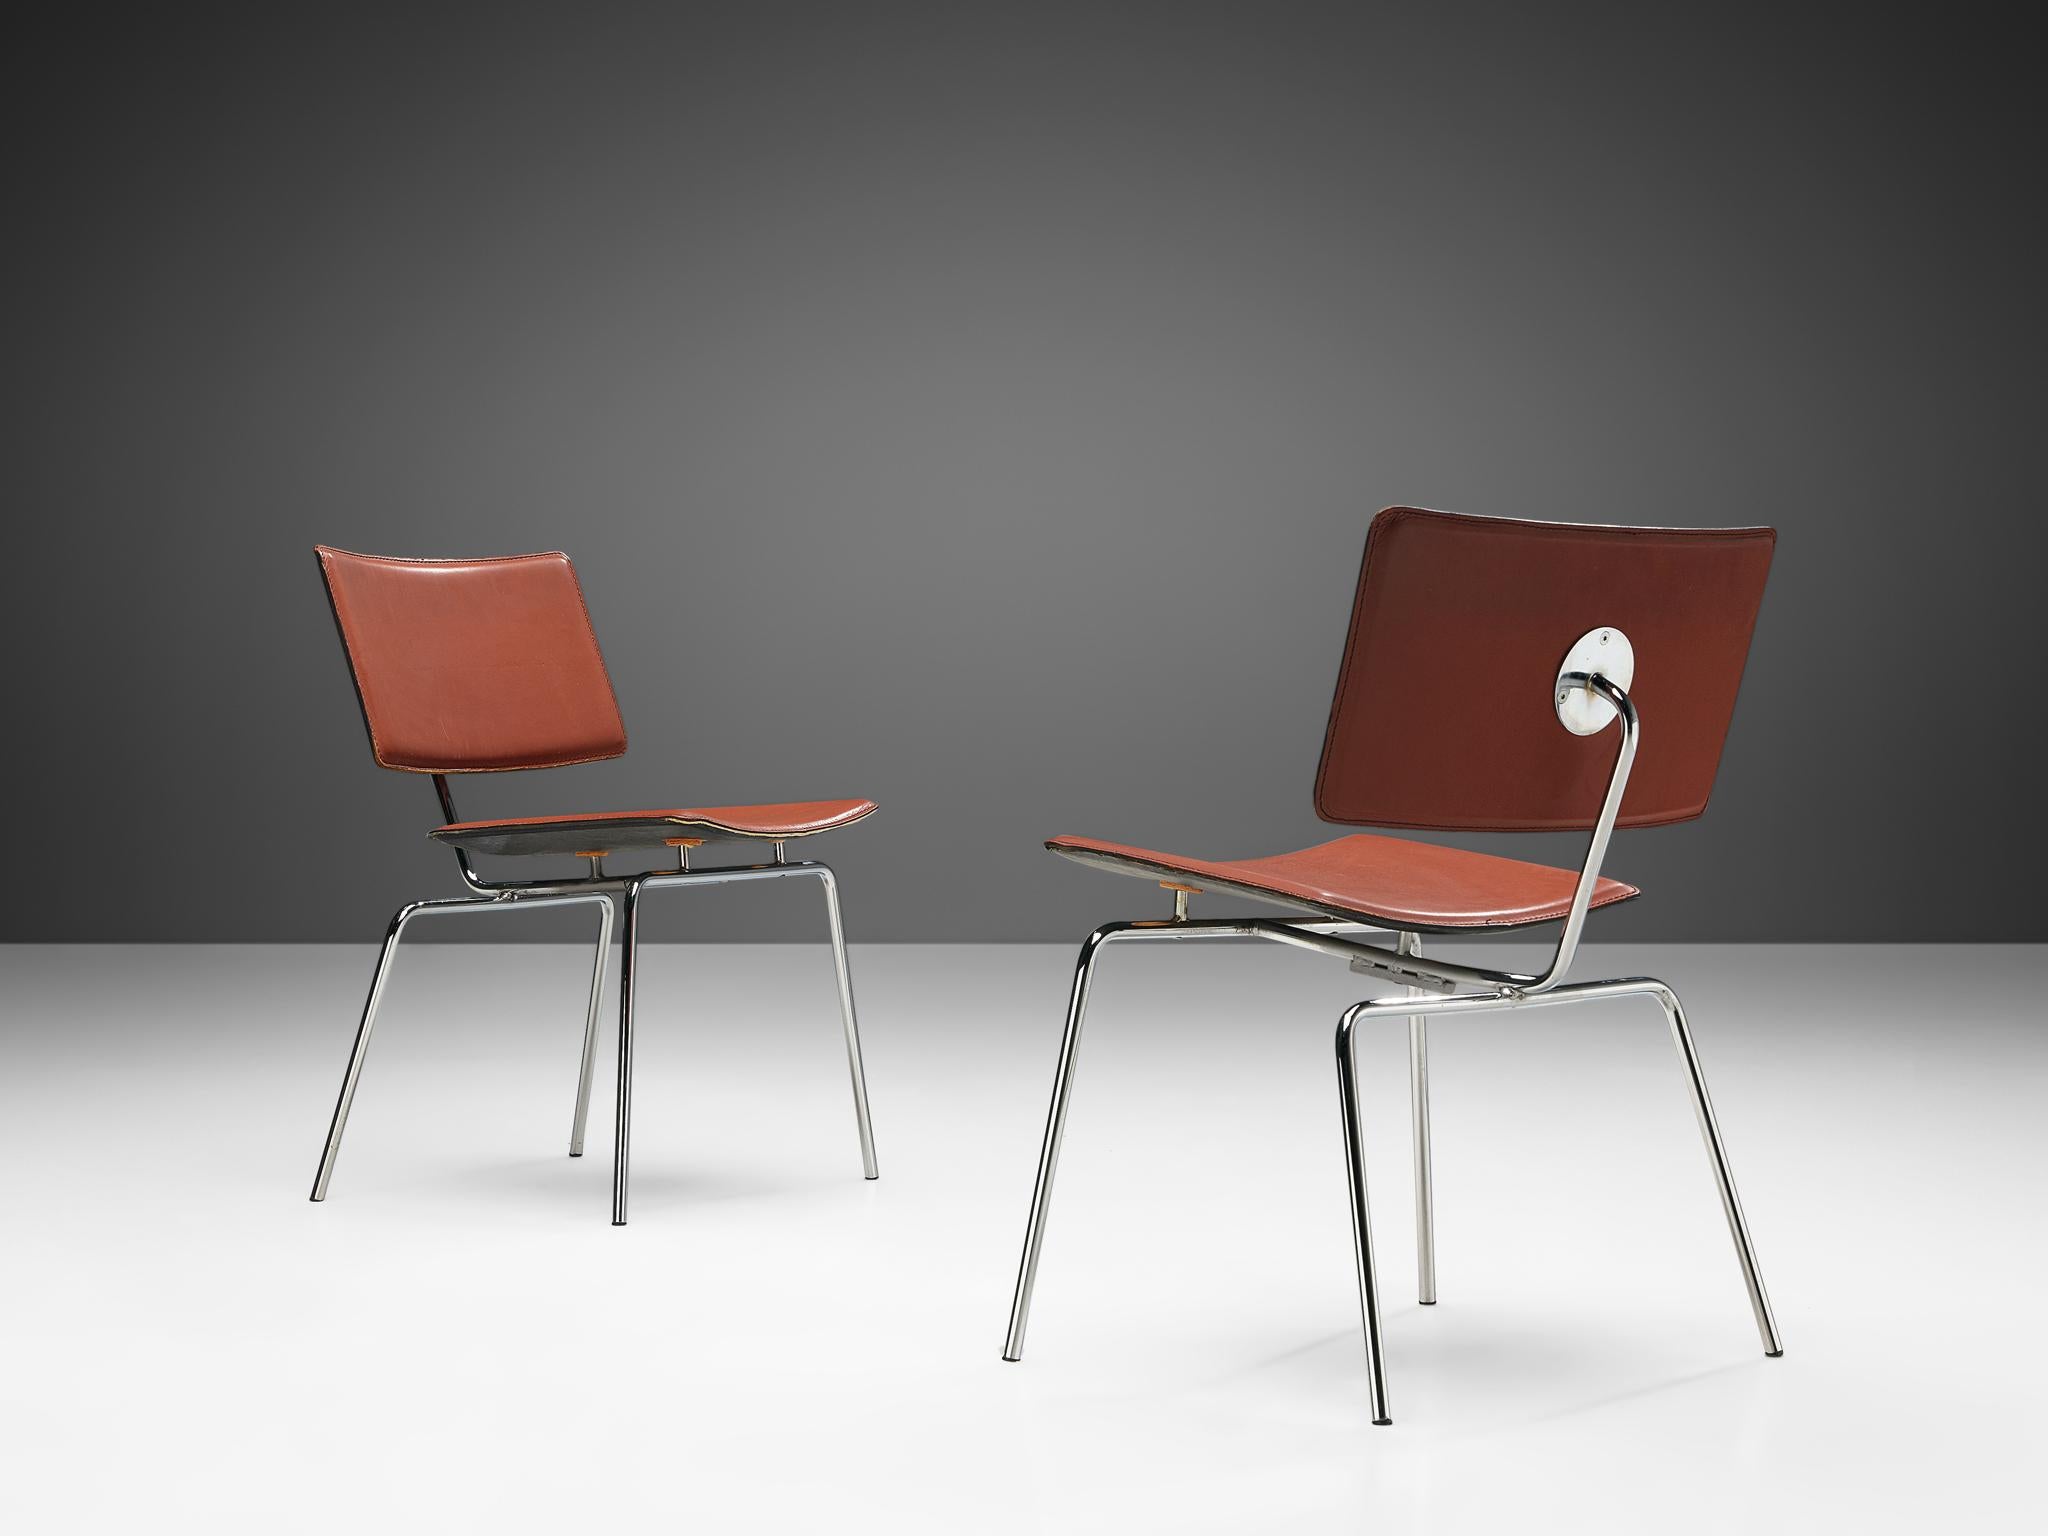 Paar Esszimmerstühle, Leder und verchromter Stahl, Europa, 1970er Jahre. 

Diese gut ausgeführten Stühle zeichnen sich durch eine moderne Konstruktion aus. Die große Sitzfläche und die Rückenlehne bestehen aus einer geschwungenen Form, die dem